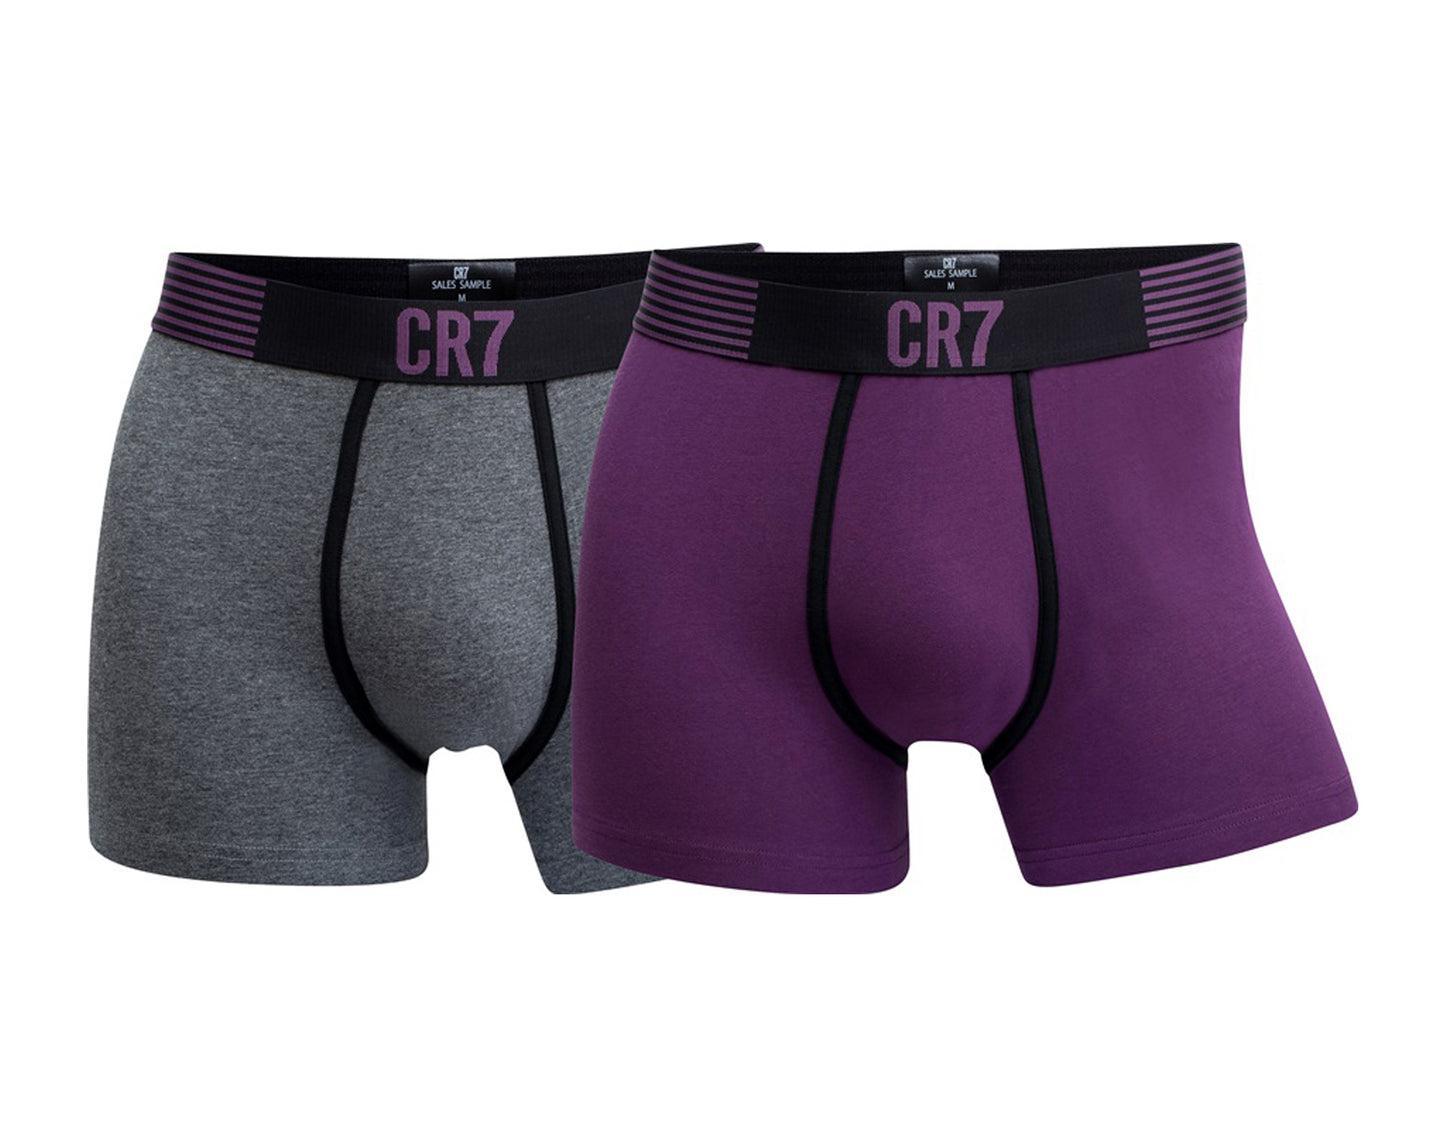 Cristiano Ronaldo CR7 2-Pack Boxer Briefs Grey/Purple Men's Underwear 8302-49-536